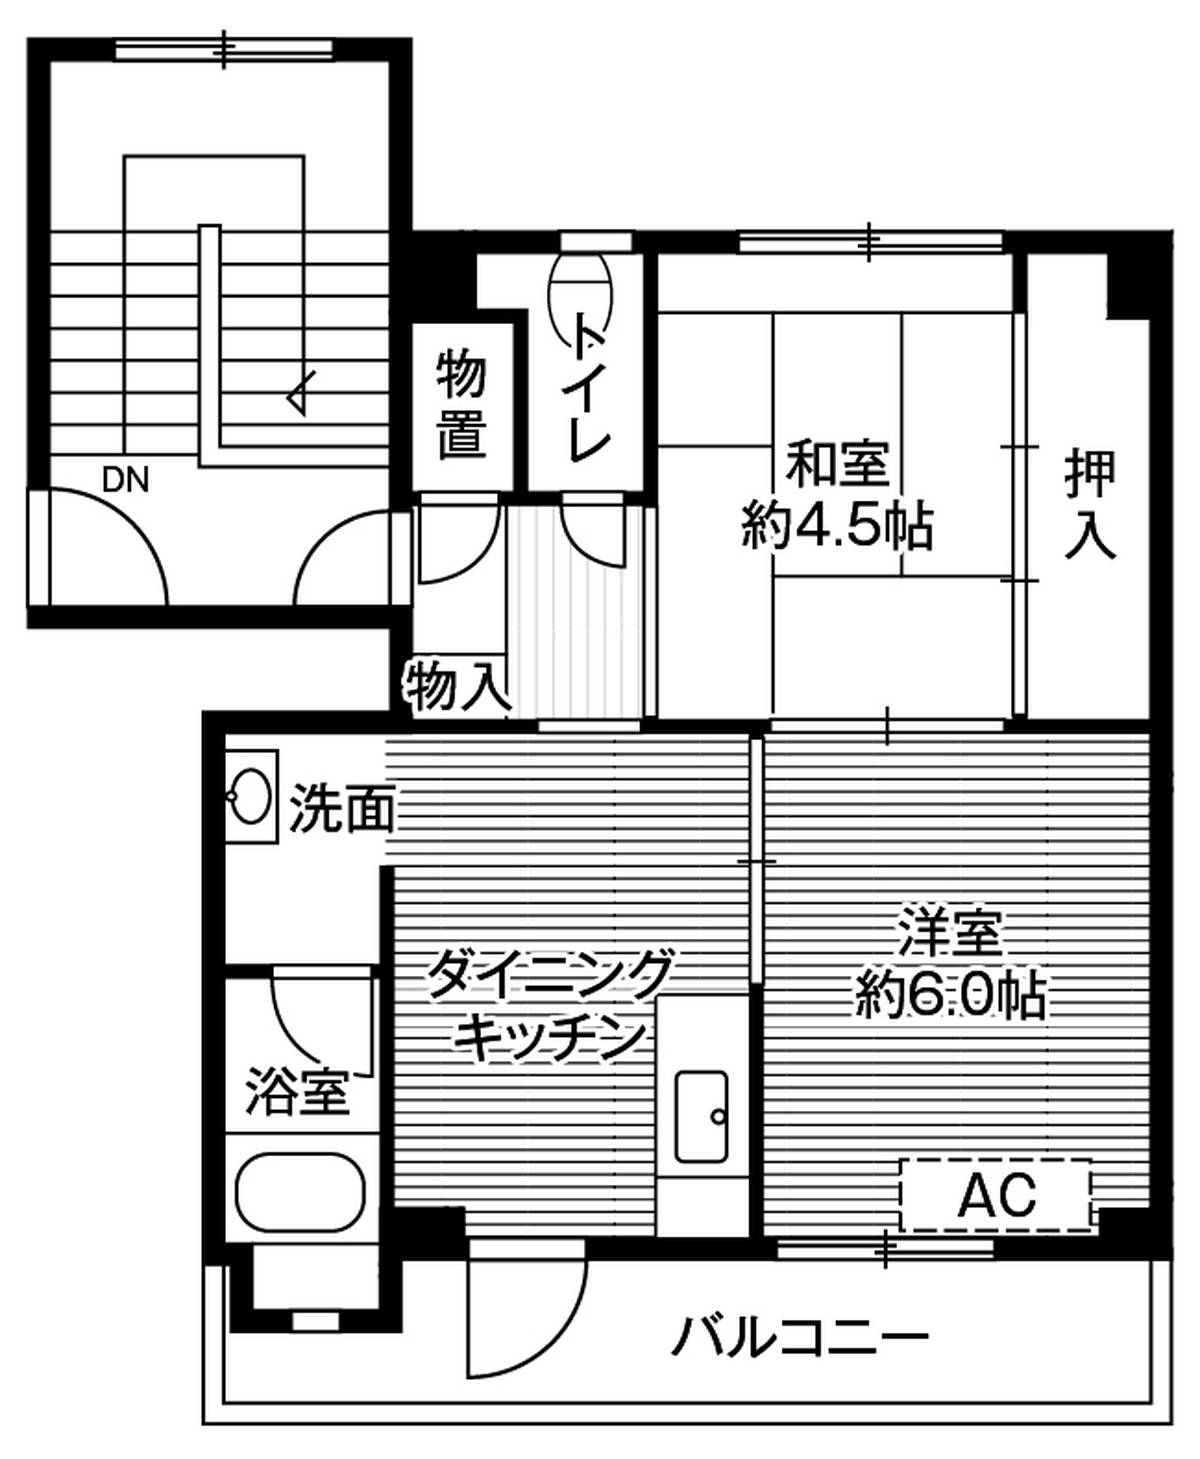 2DK floorplan of Village House Kanegasaki in Isawa-gun